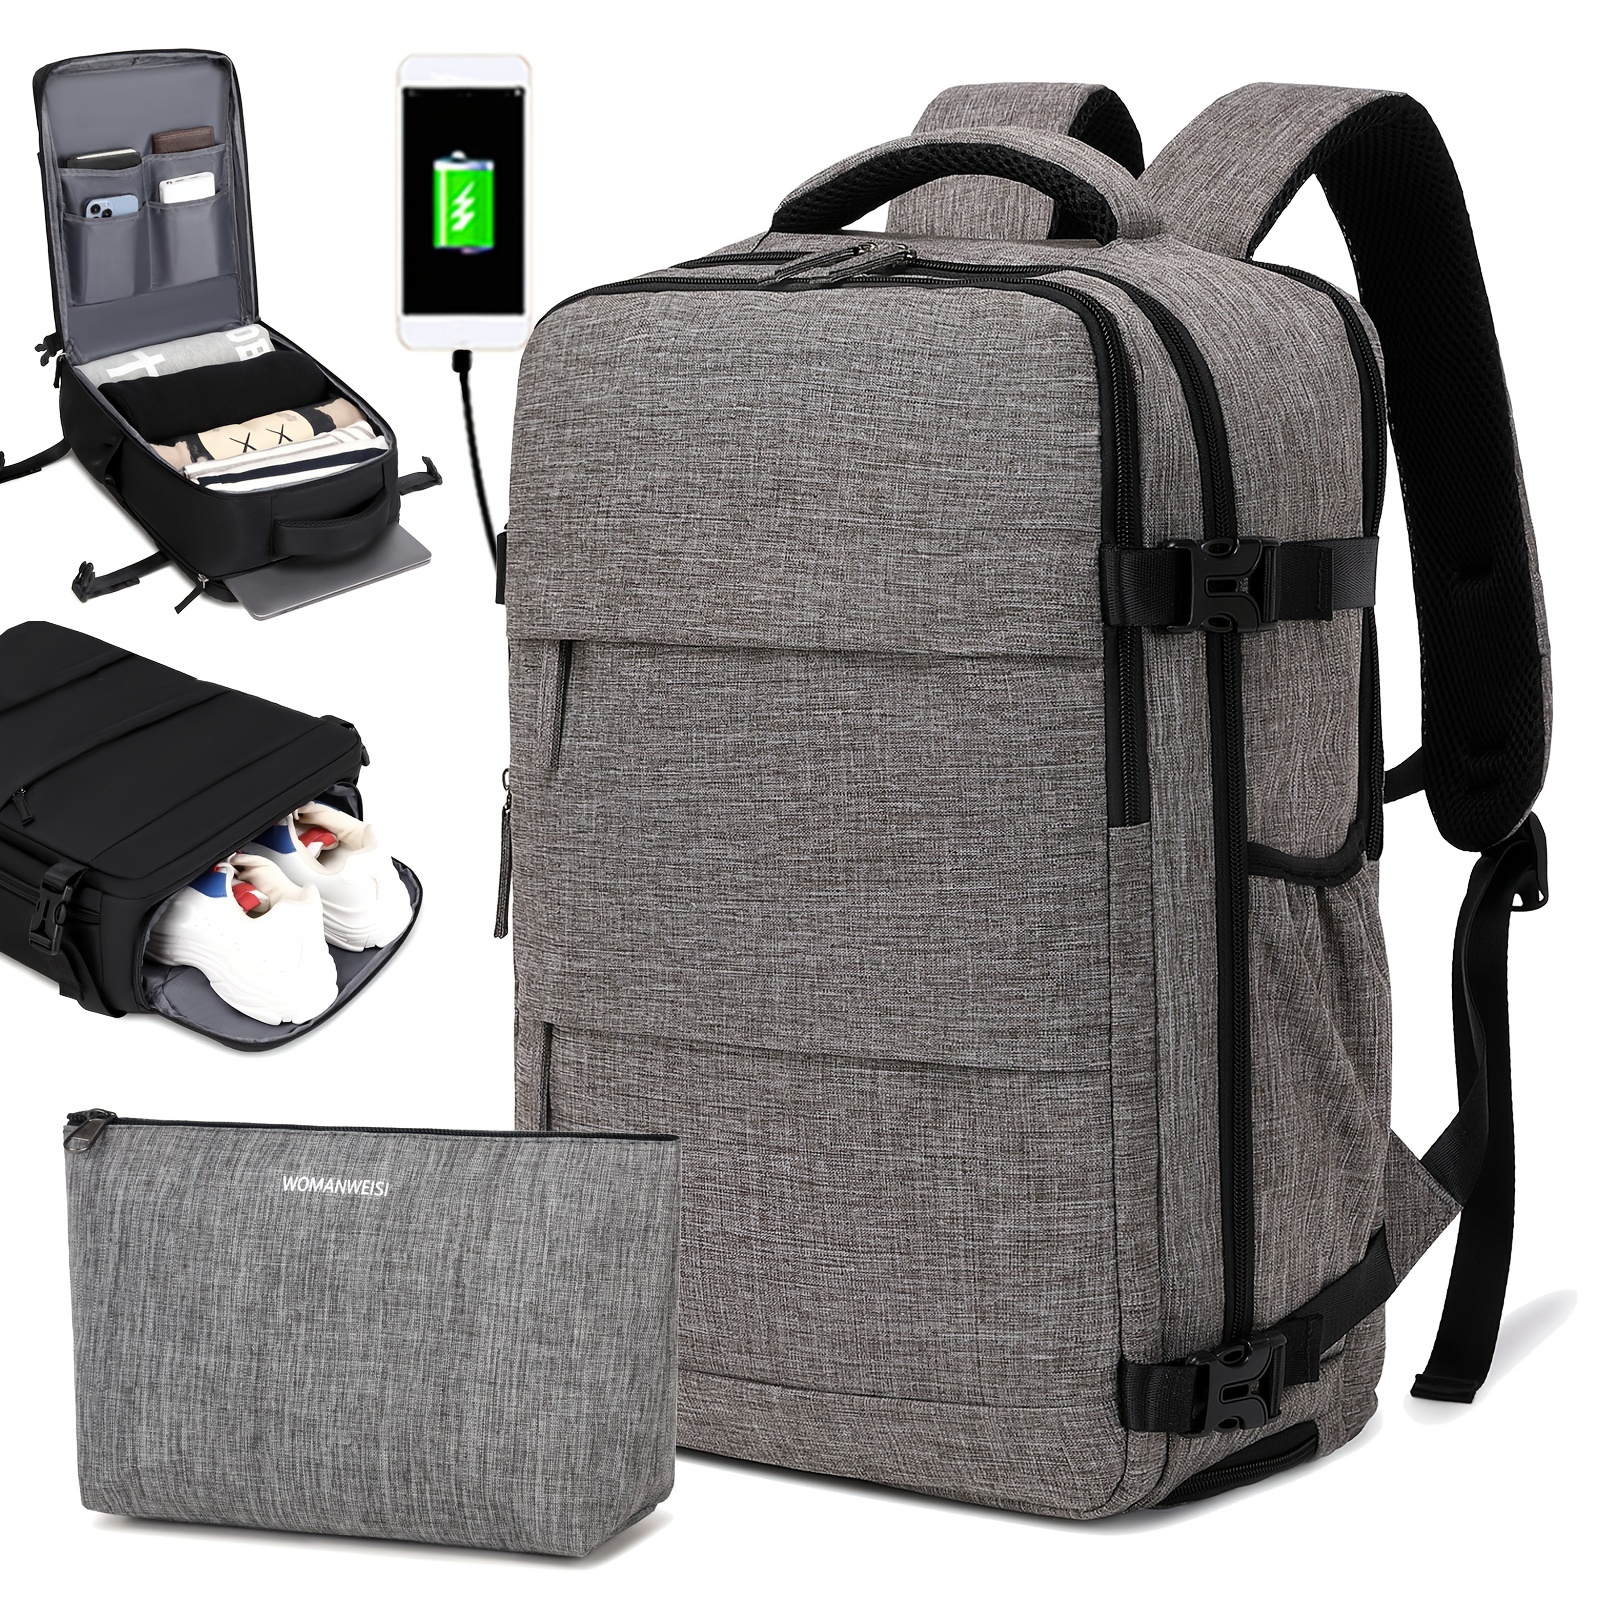 Mochila de viaje multifuncional de gran capacidad, mochila resistente al agua para computadora portátil de color liso, con puerto de carga USB, mochila ideal para viajes, negocios y desplazamientos